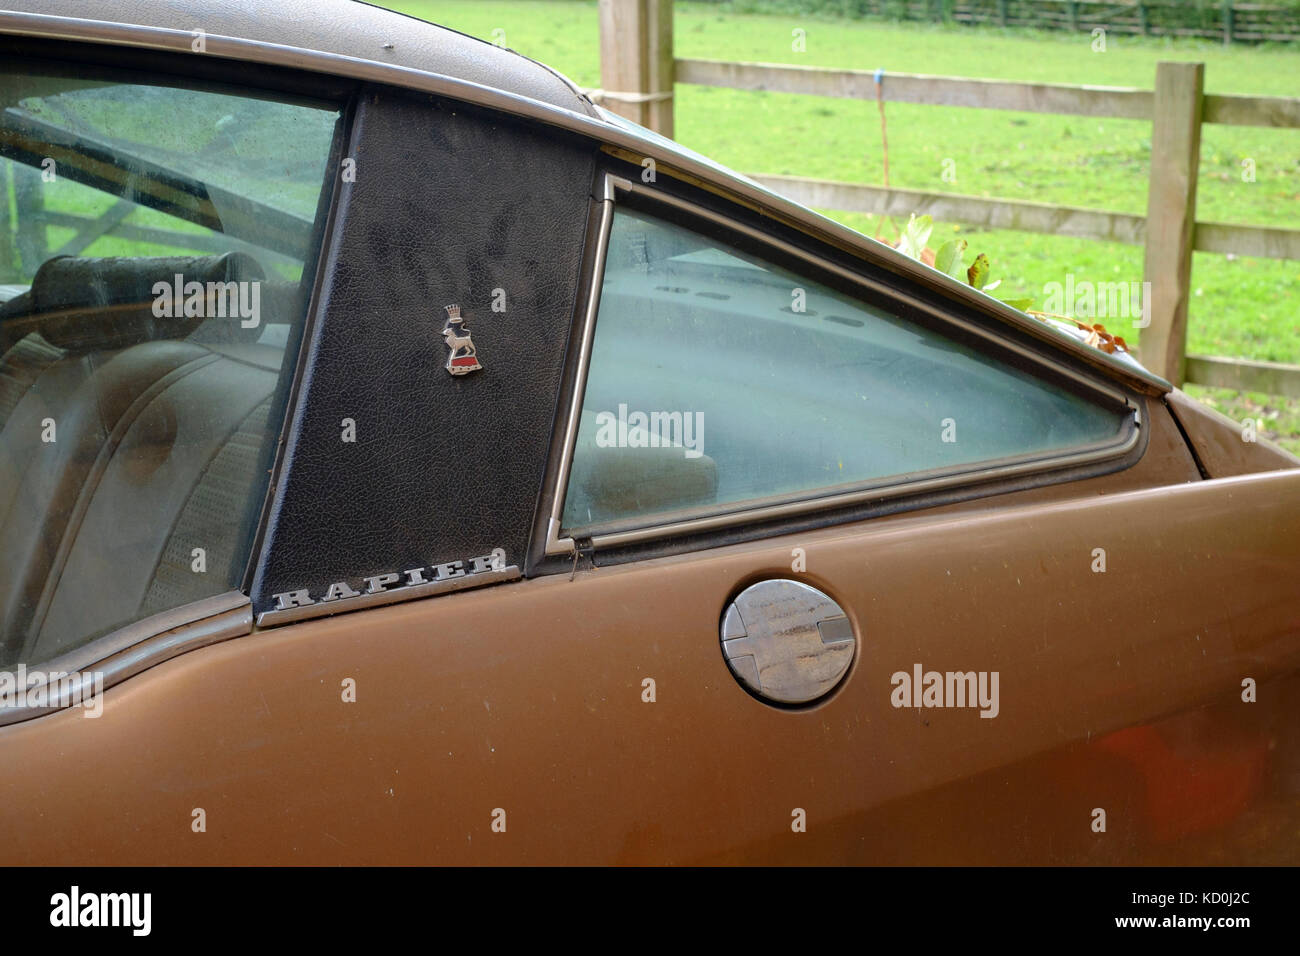 Trouver une grange d'un british sunbeam rapier voiture depuis les années 1970 prêt pour la restauration comme un projet montrant panneau arrière avec le nom du modèle et le symbole Banque D'Images